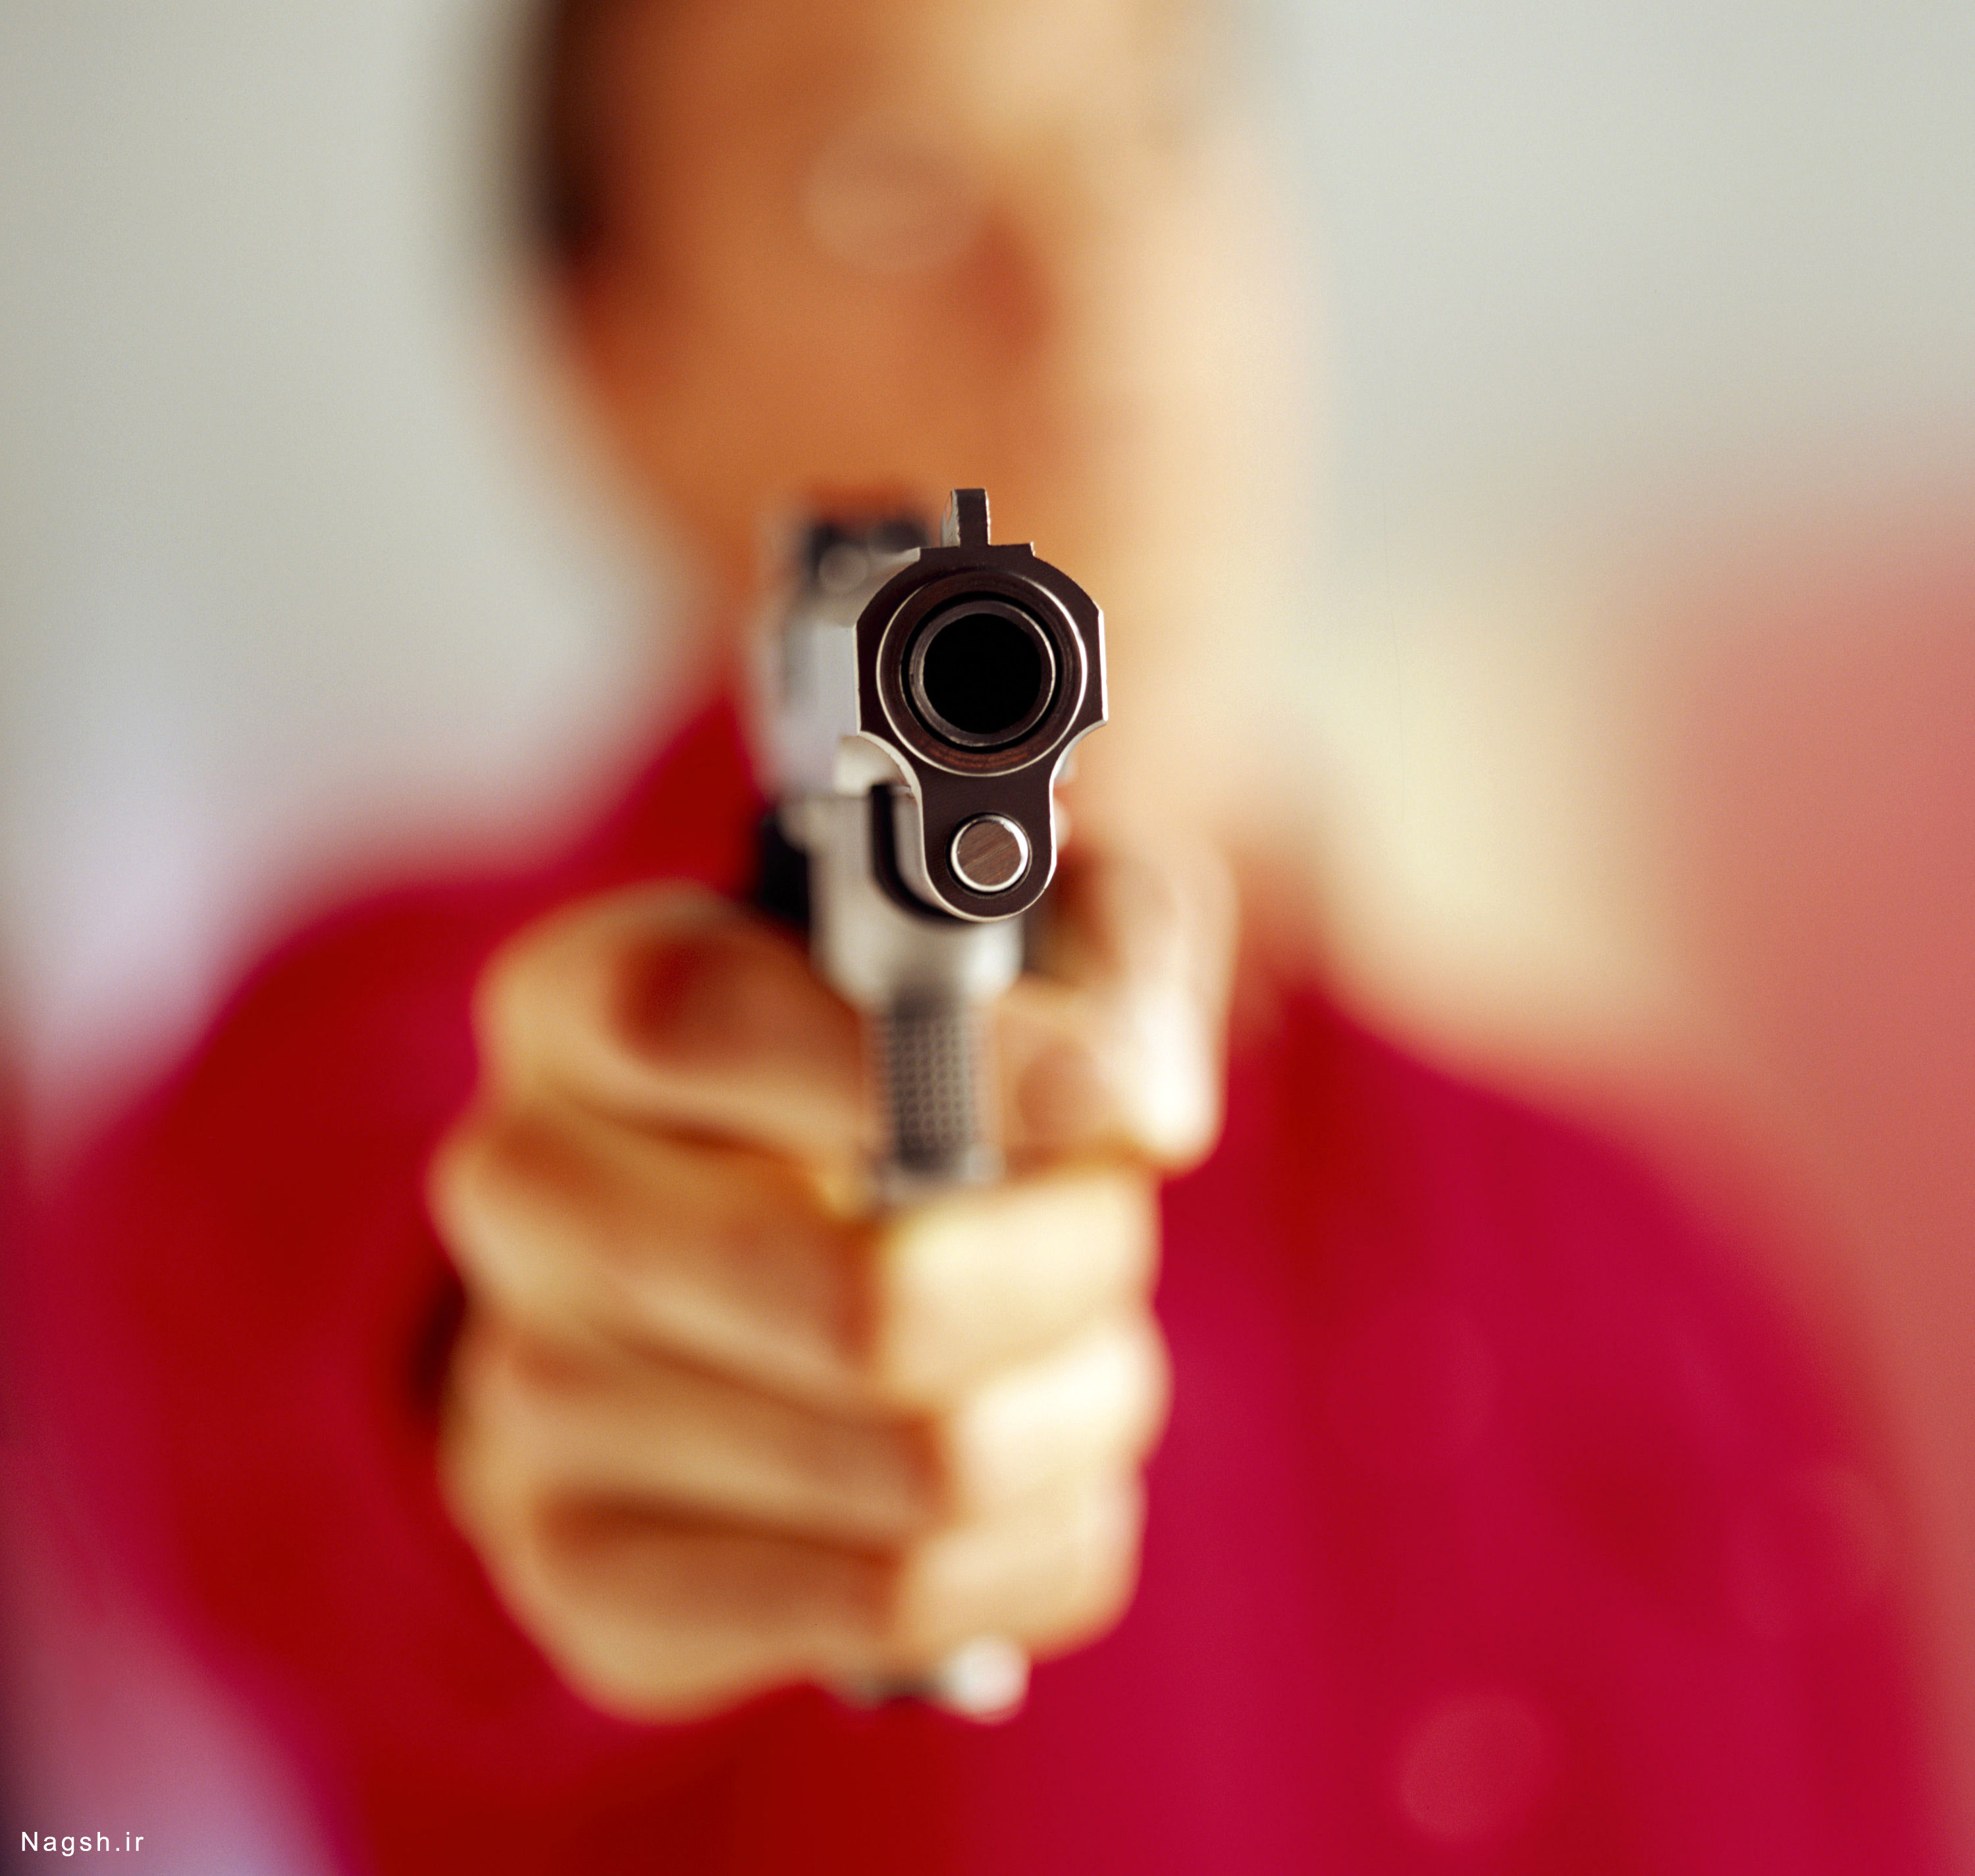 شلیک مرگبار؛ پایان دعوای اینستاگرامی ۲ پسر جوان